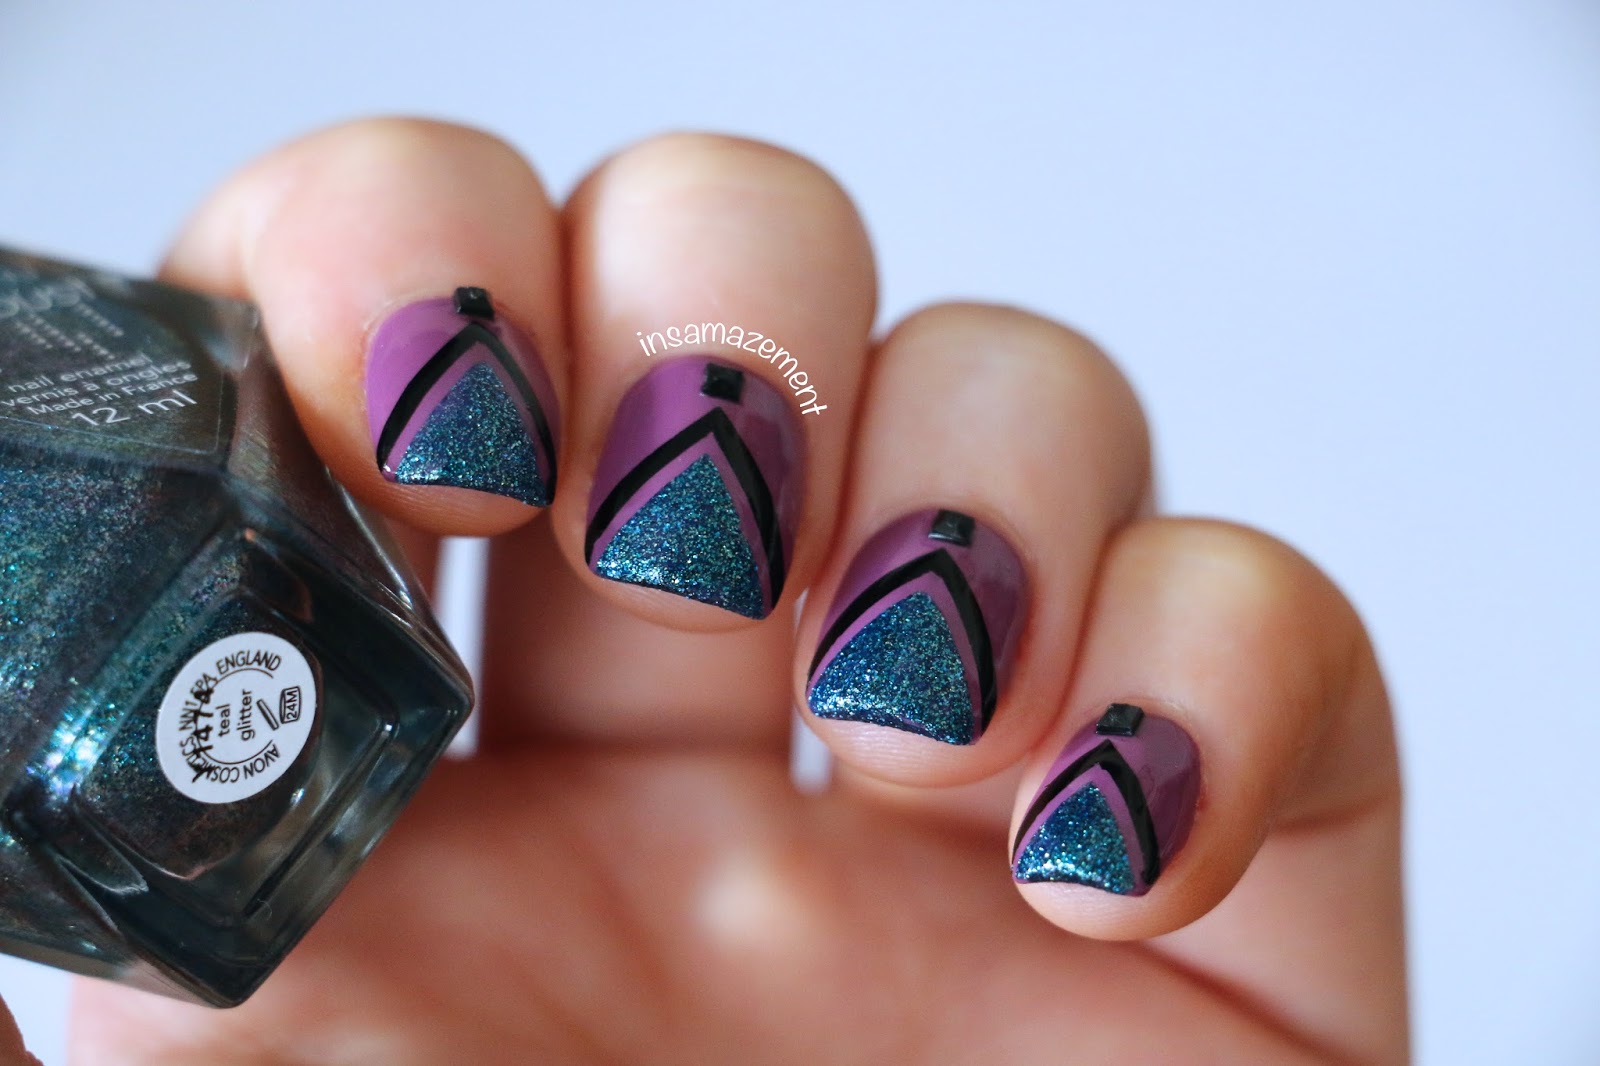 5. Mermaid nail art decals - wide 1